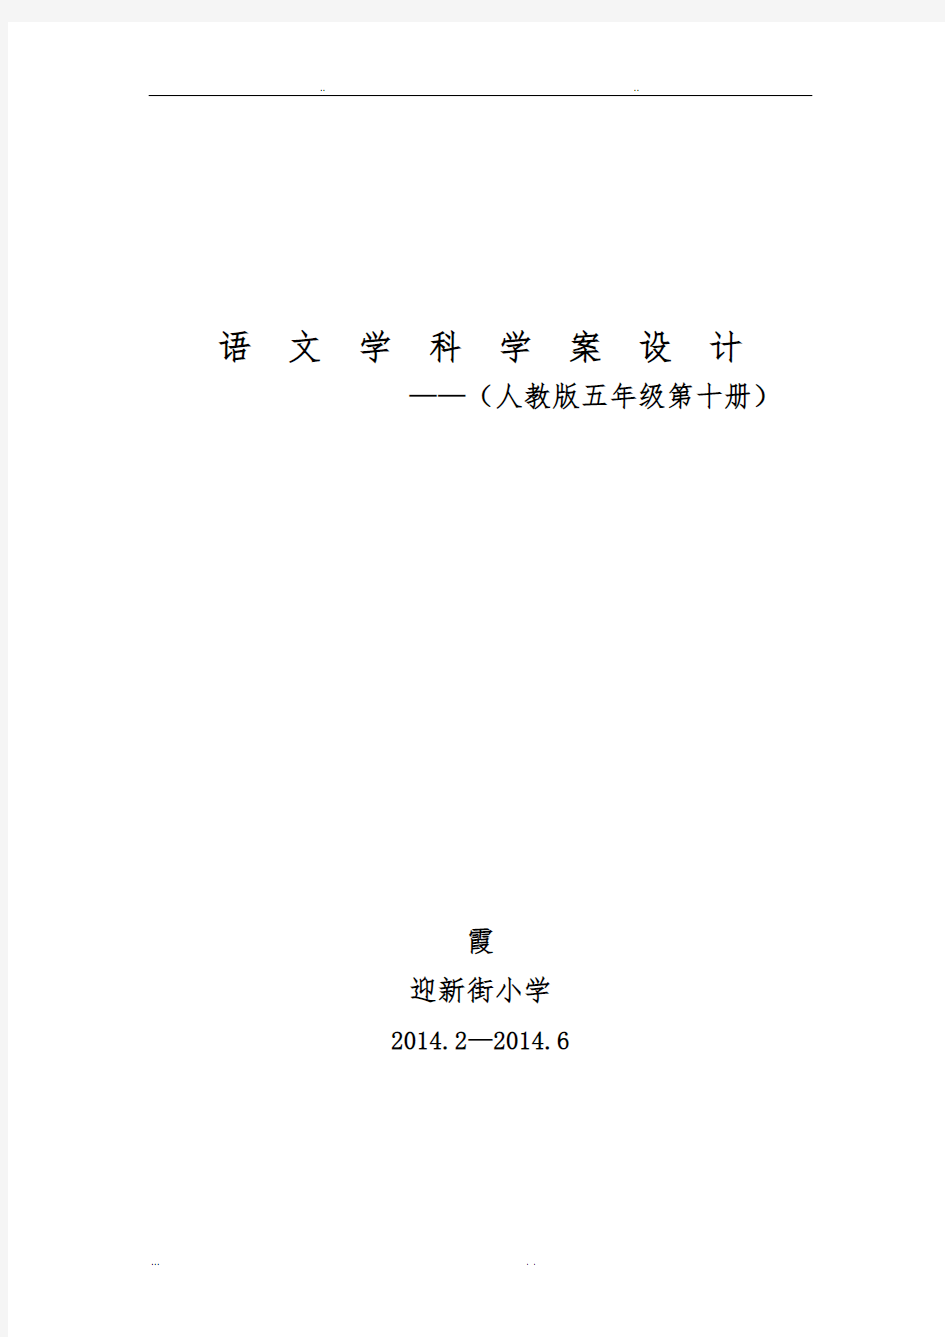 五年级(下册)语文教材分析报告